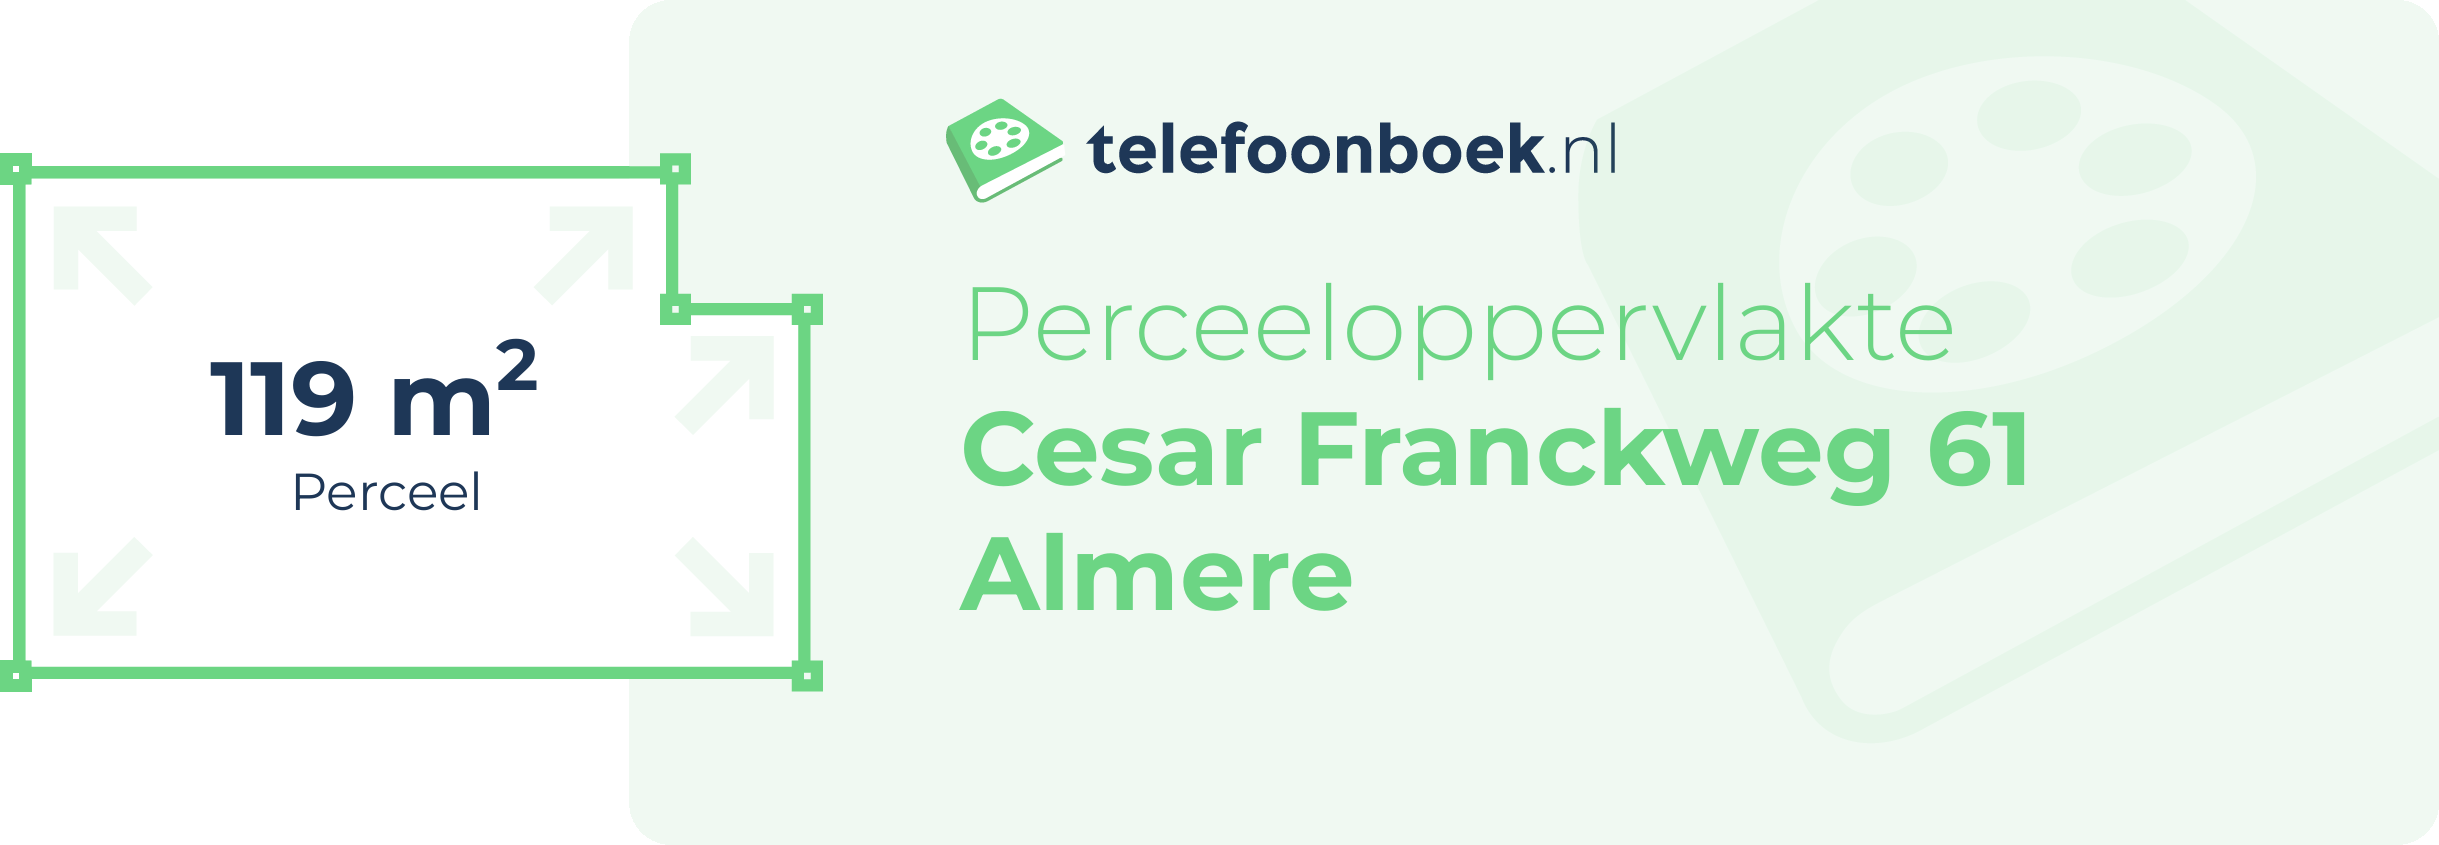 Perceeloppervlakte Cesar Franckweg 61 Almere